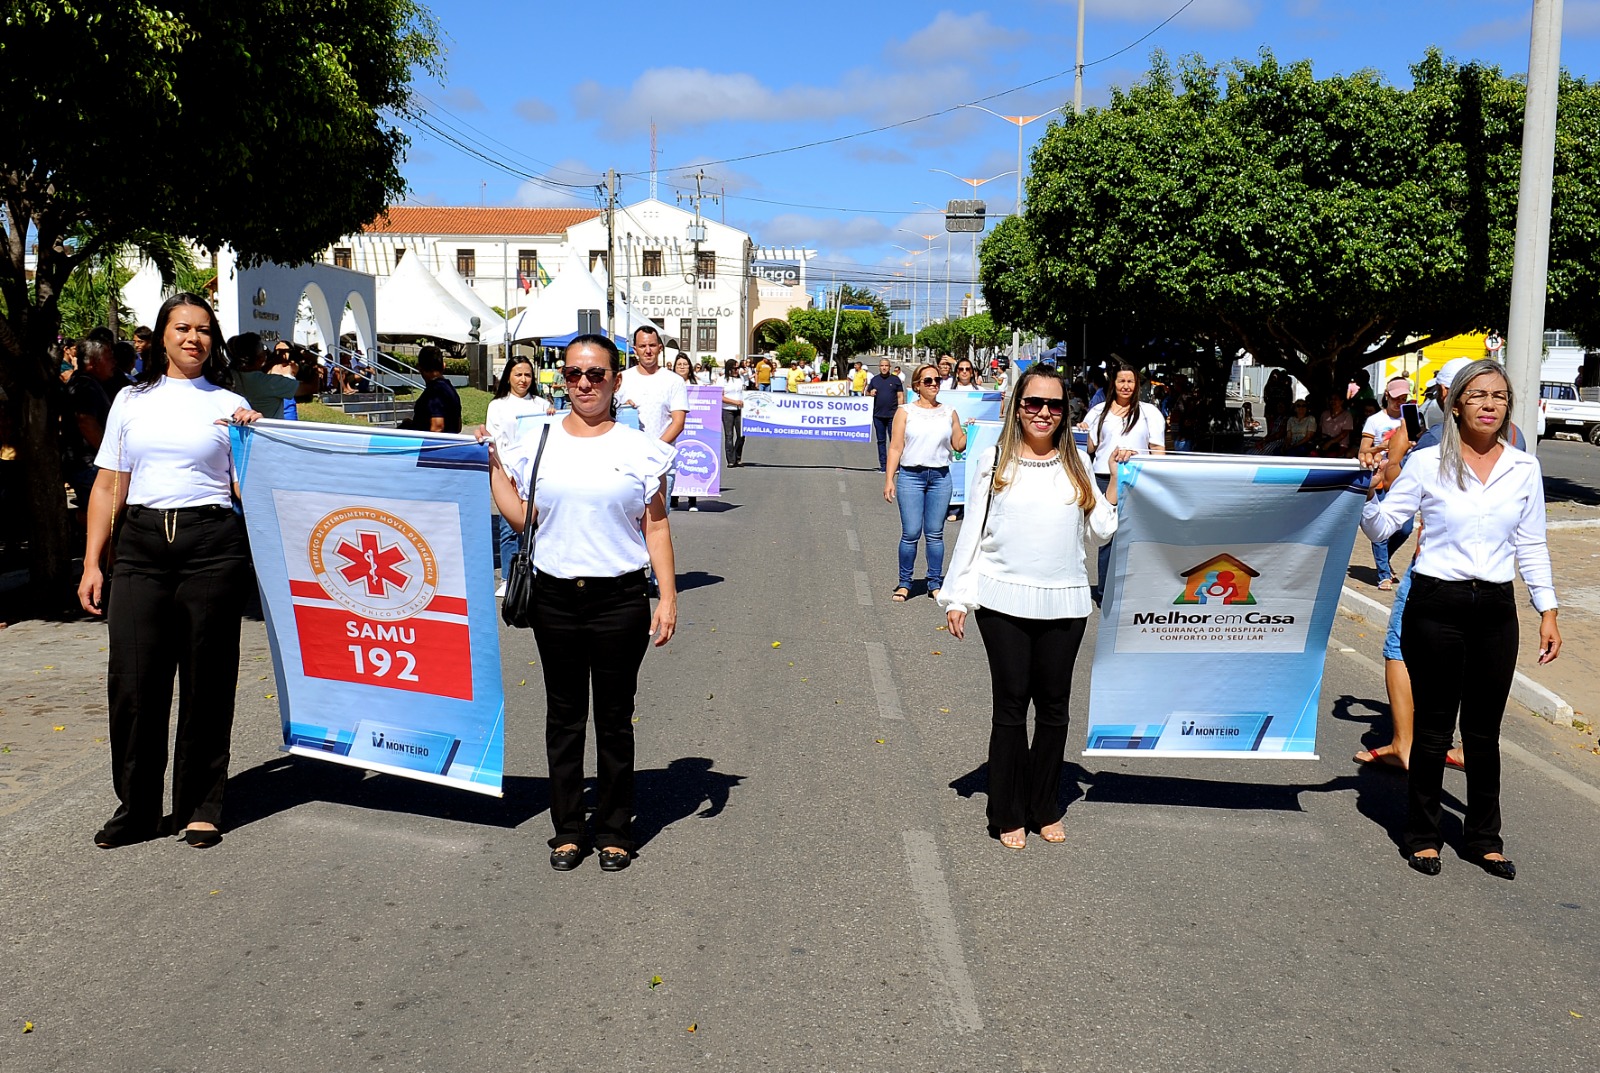 Desfiles-Civicos-em-Monteiro-acontecem-com-grande-presenca-de-publico-e-autoridades-28 Desfiles Cívicos em Monteiro acontecem com grande presença de público e autoridades